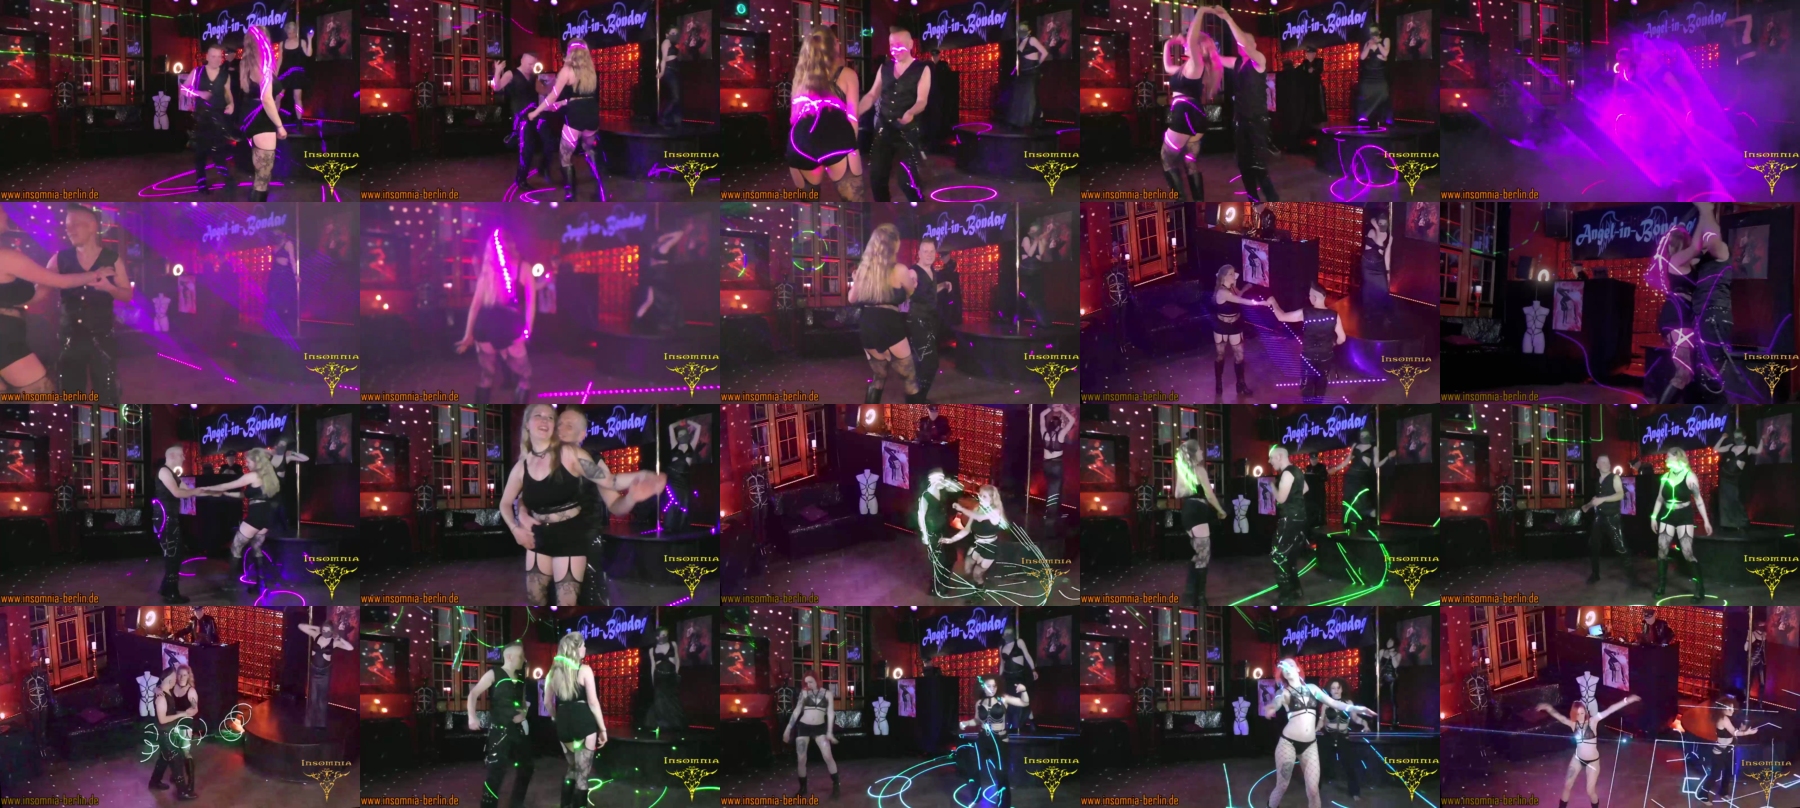 Insomnia_Kinky_Nightclub_Tv2  28-05-2021